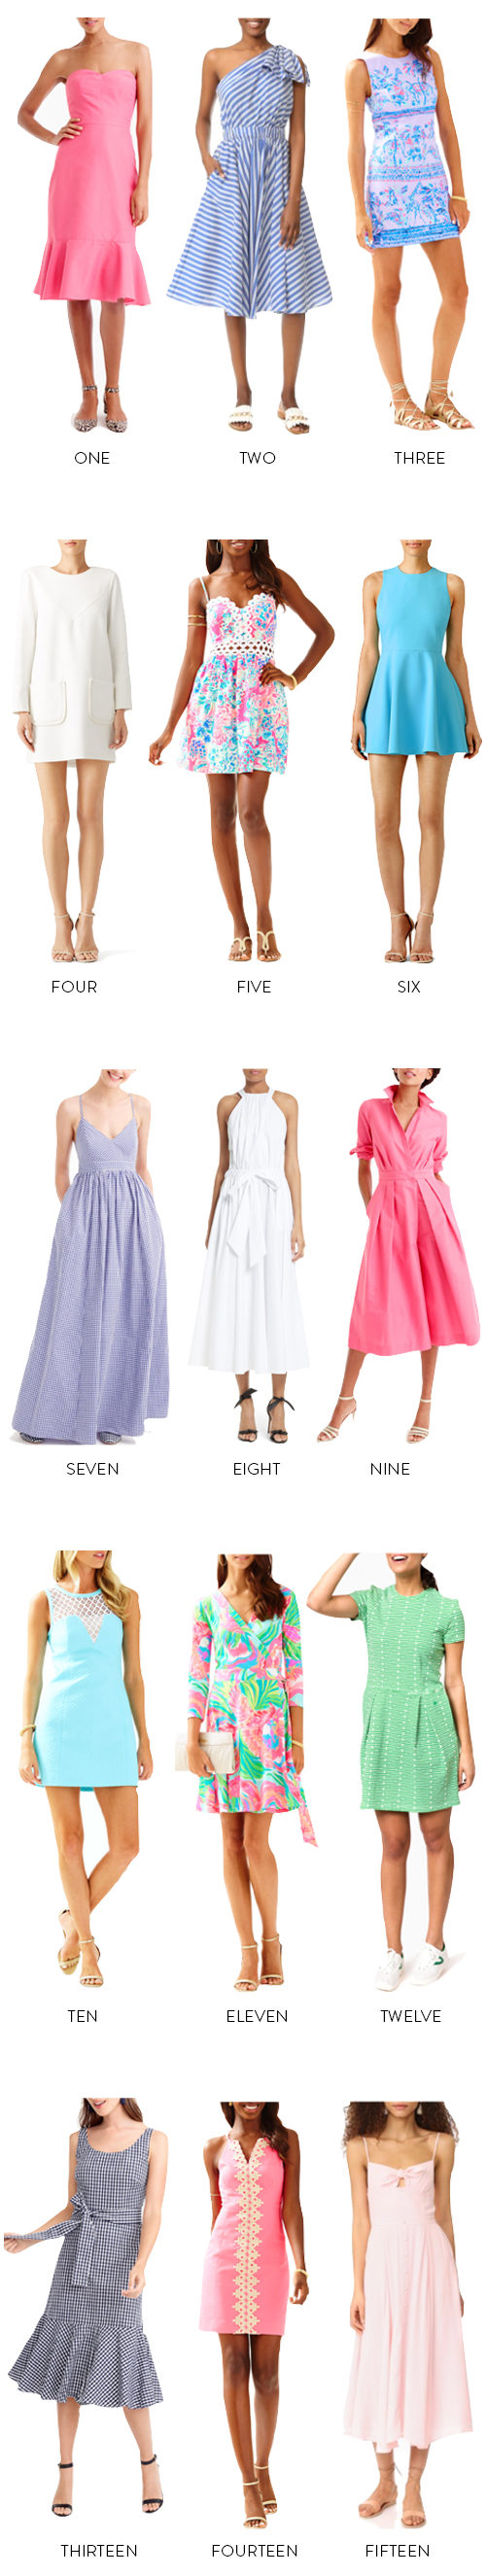 colorful preppy easter dresses on design darling